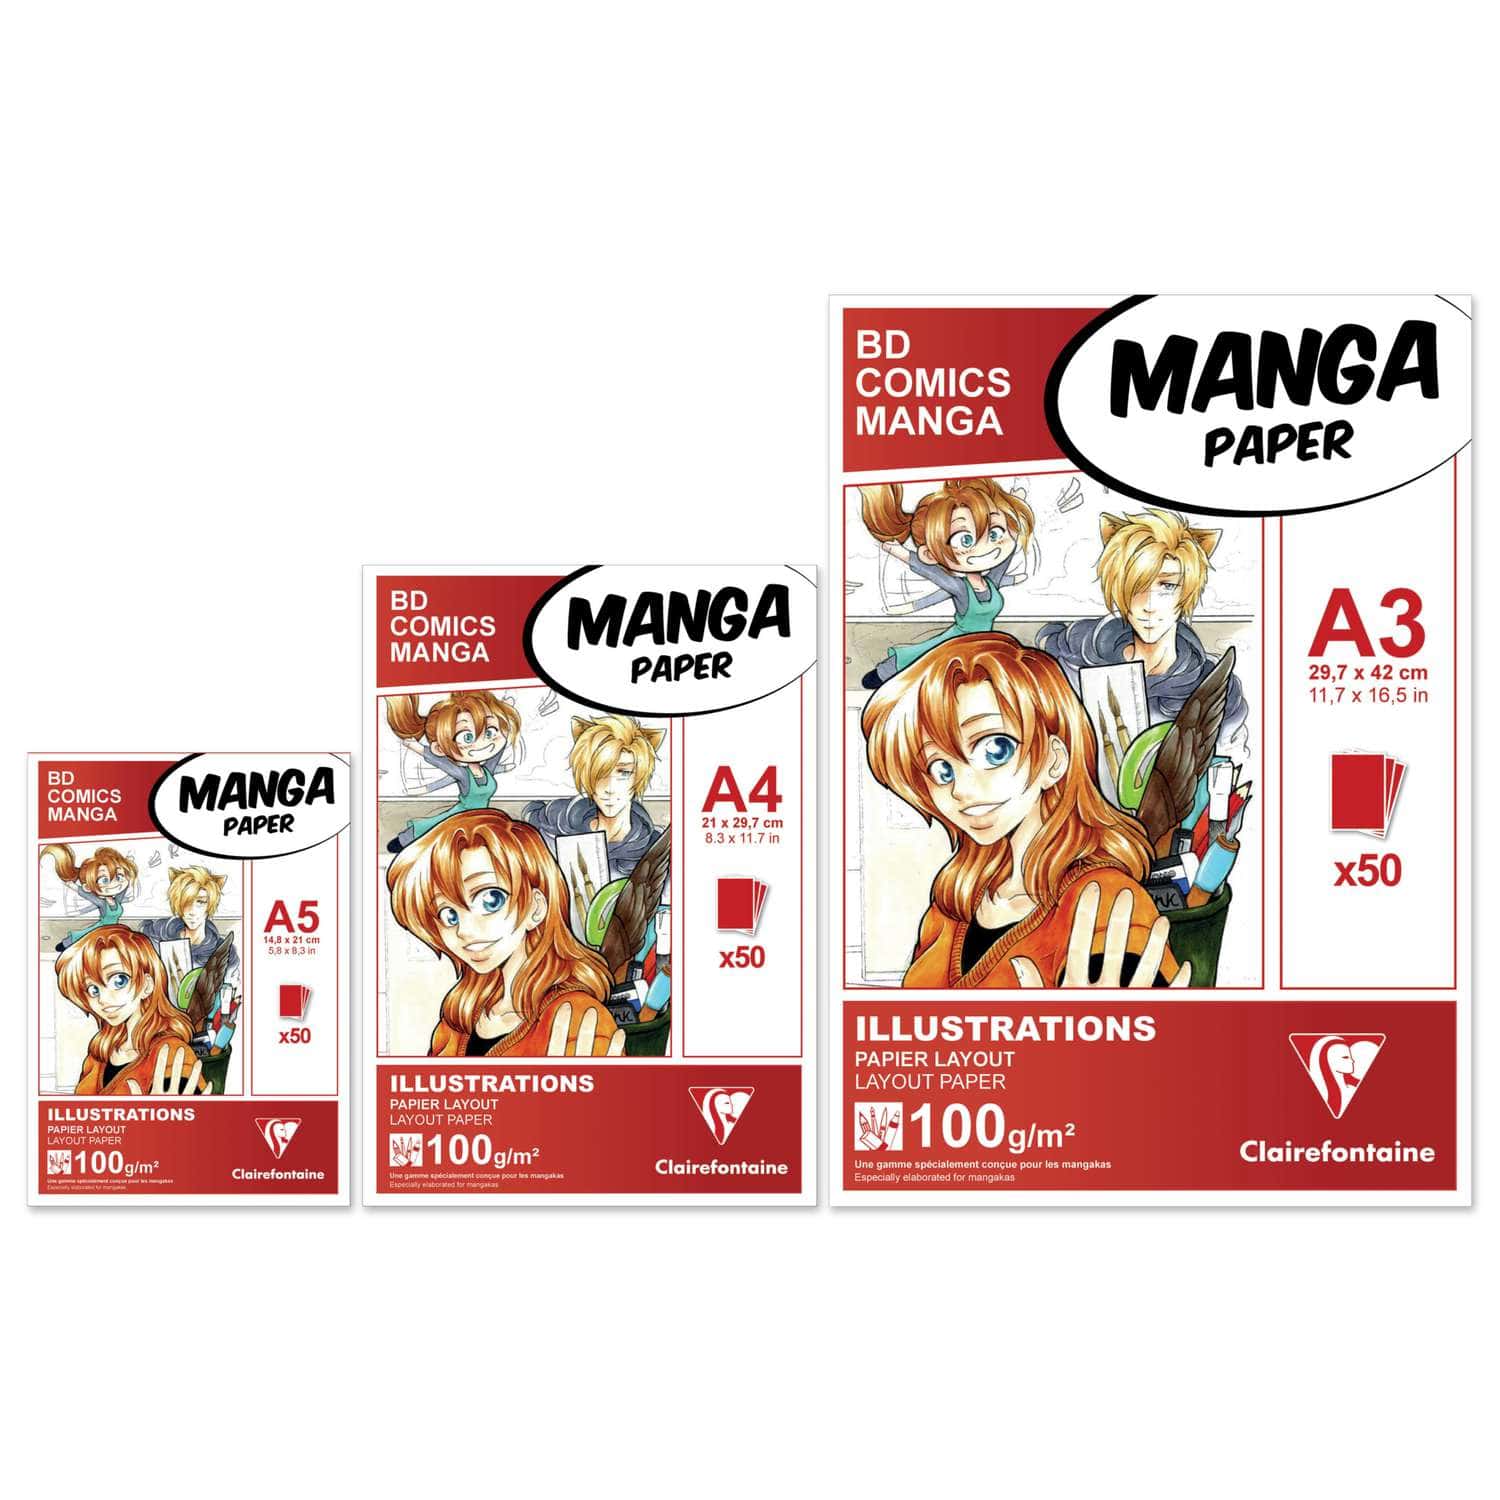 Blocs Manga Illustrations Clairefontaine  Le Géant des Beaux-Arts - N°1 de  la vente en ligne de matériels pour Artistes